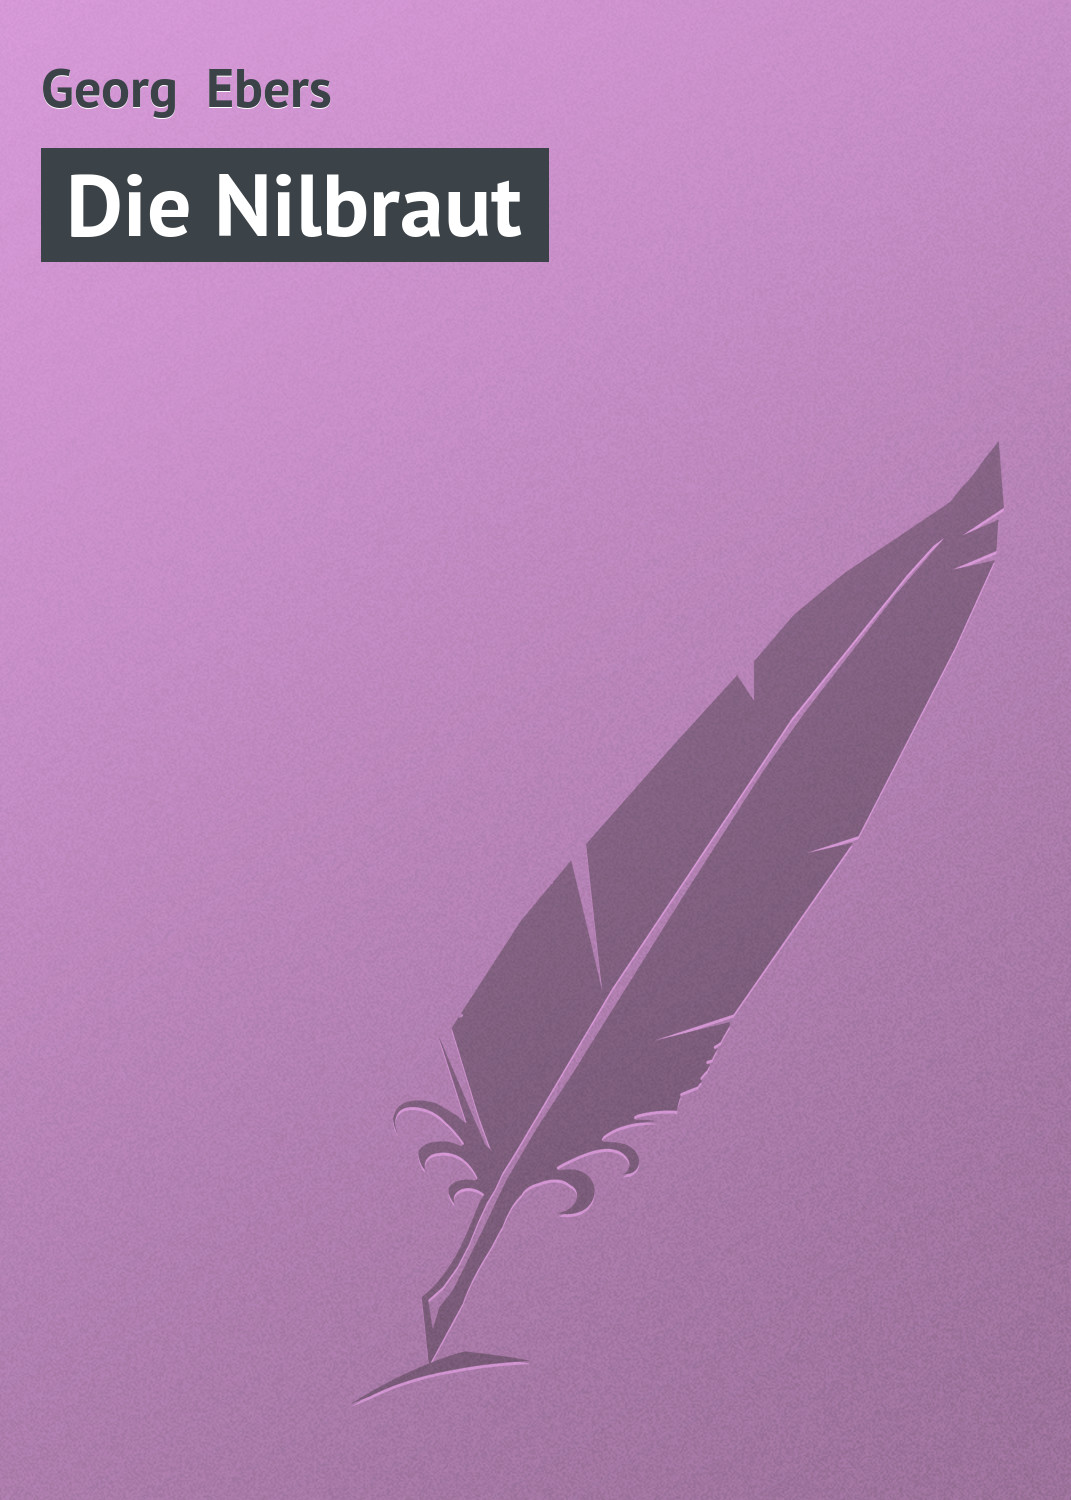 Книга Die Nilbraut из серии , созданная Georg Ebers, может относится к жанру Зарубежная старинная литература, Зарубежная классика. Стоимость электронной книги Die Nilbraut с идентификатором 21106774 составляет 5.99 руб.